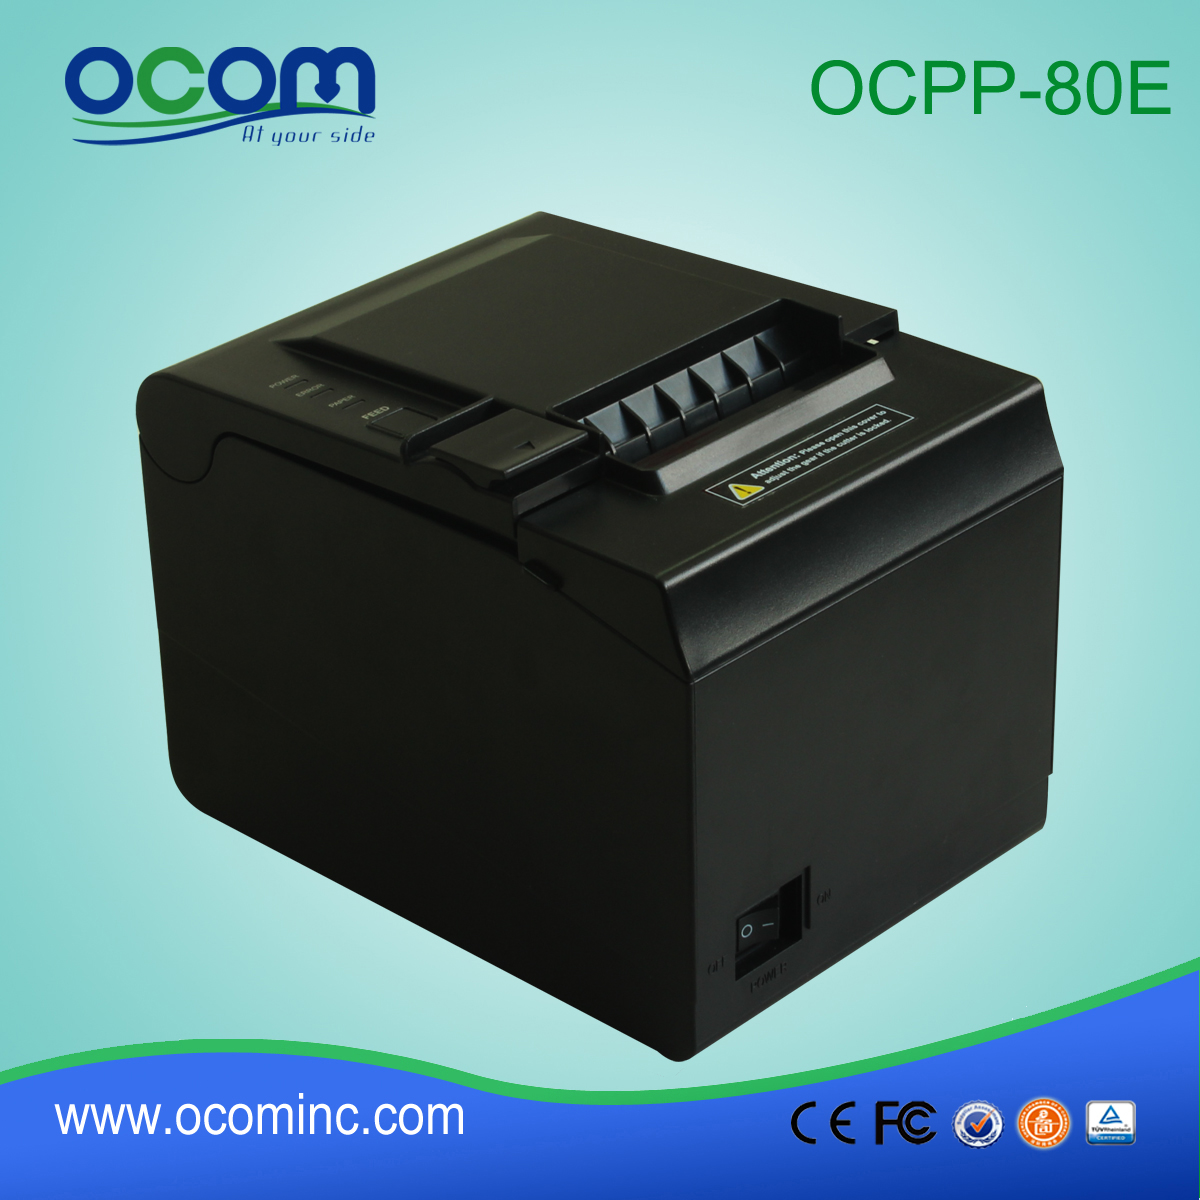 OCPP-80E Imprimante de réception imprimante thermique 80mm prend en charge la détection de marque noire